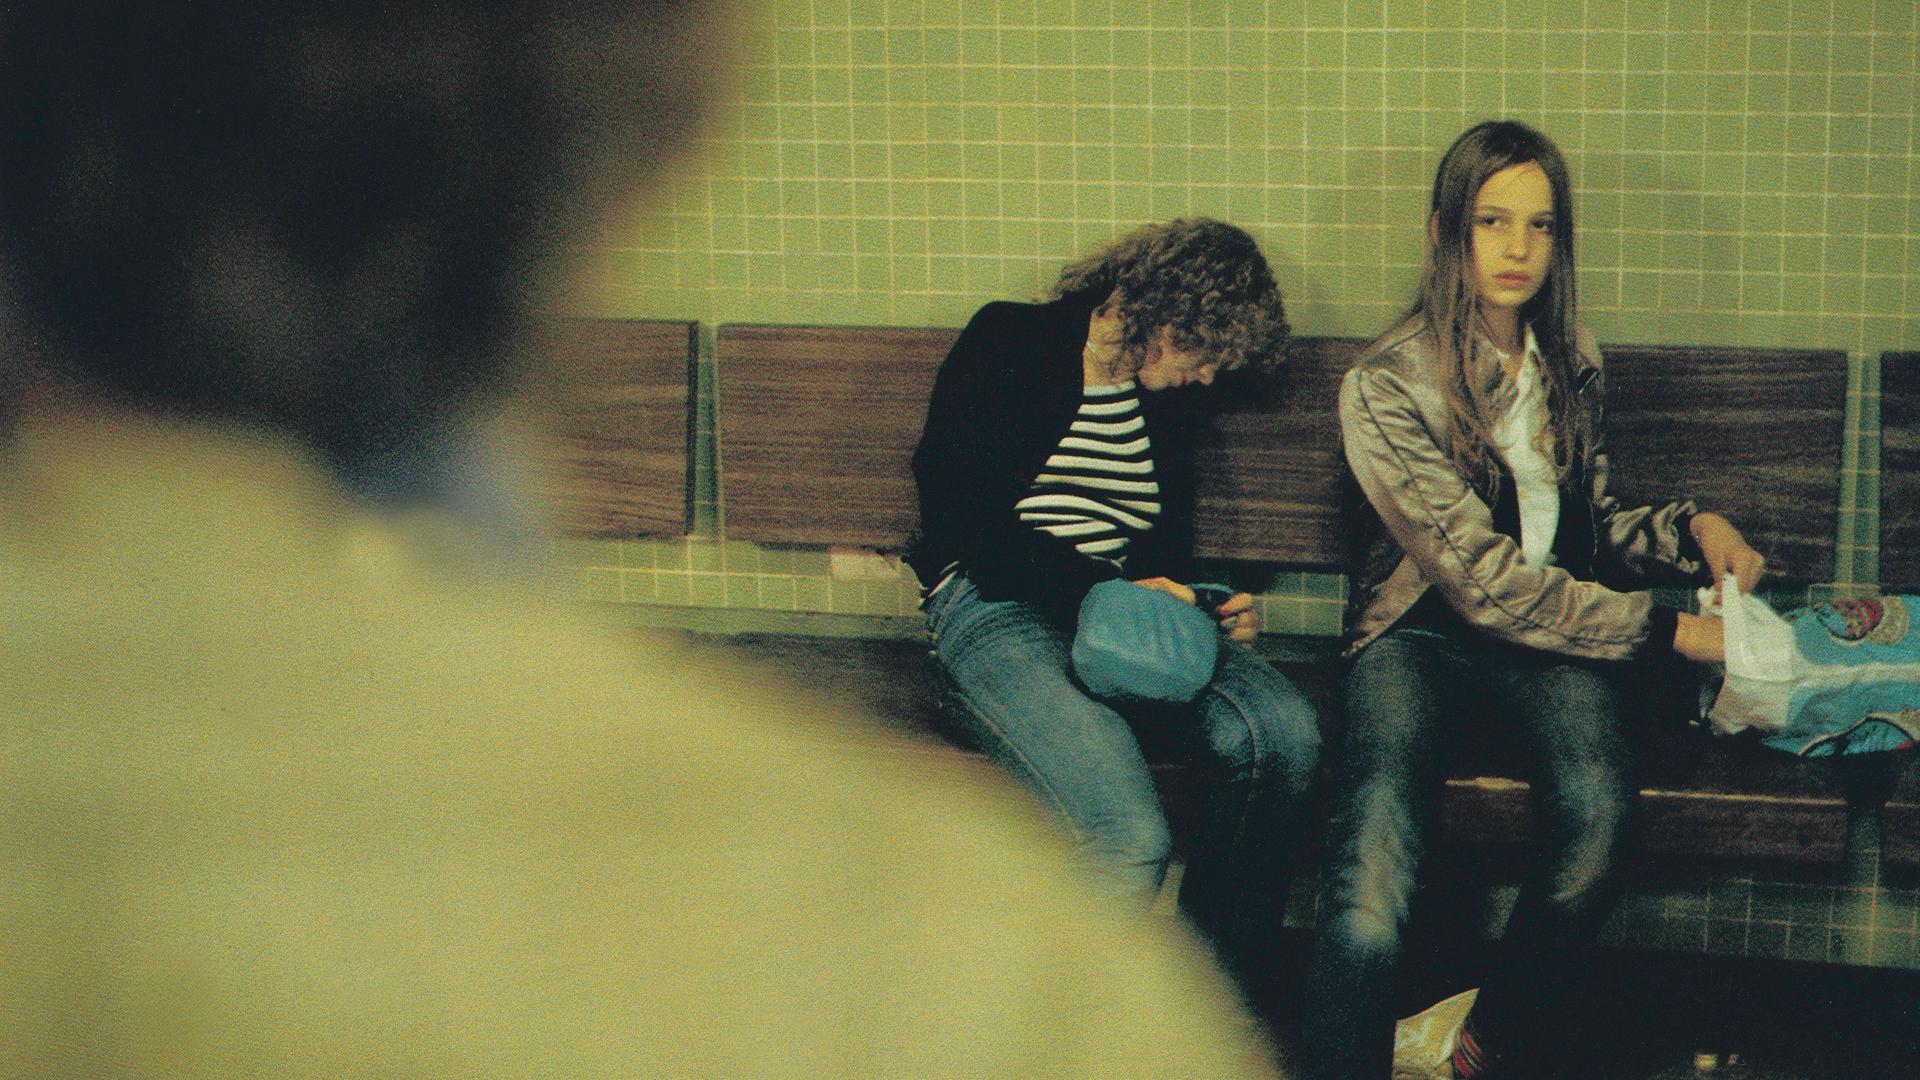 Filmstill aus "Christiane F. - Wir Kinder vom Bahnhof Zoo". Christiane F. sitzt auf einer Bank in einem U-Bahnhof, neben ihr sitzt zusammen gesackt eine weiter Person. Christiane F. schaut zu der Person, die von hinten am linken Bildrand zu sehen ist.